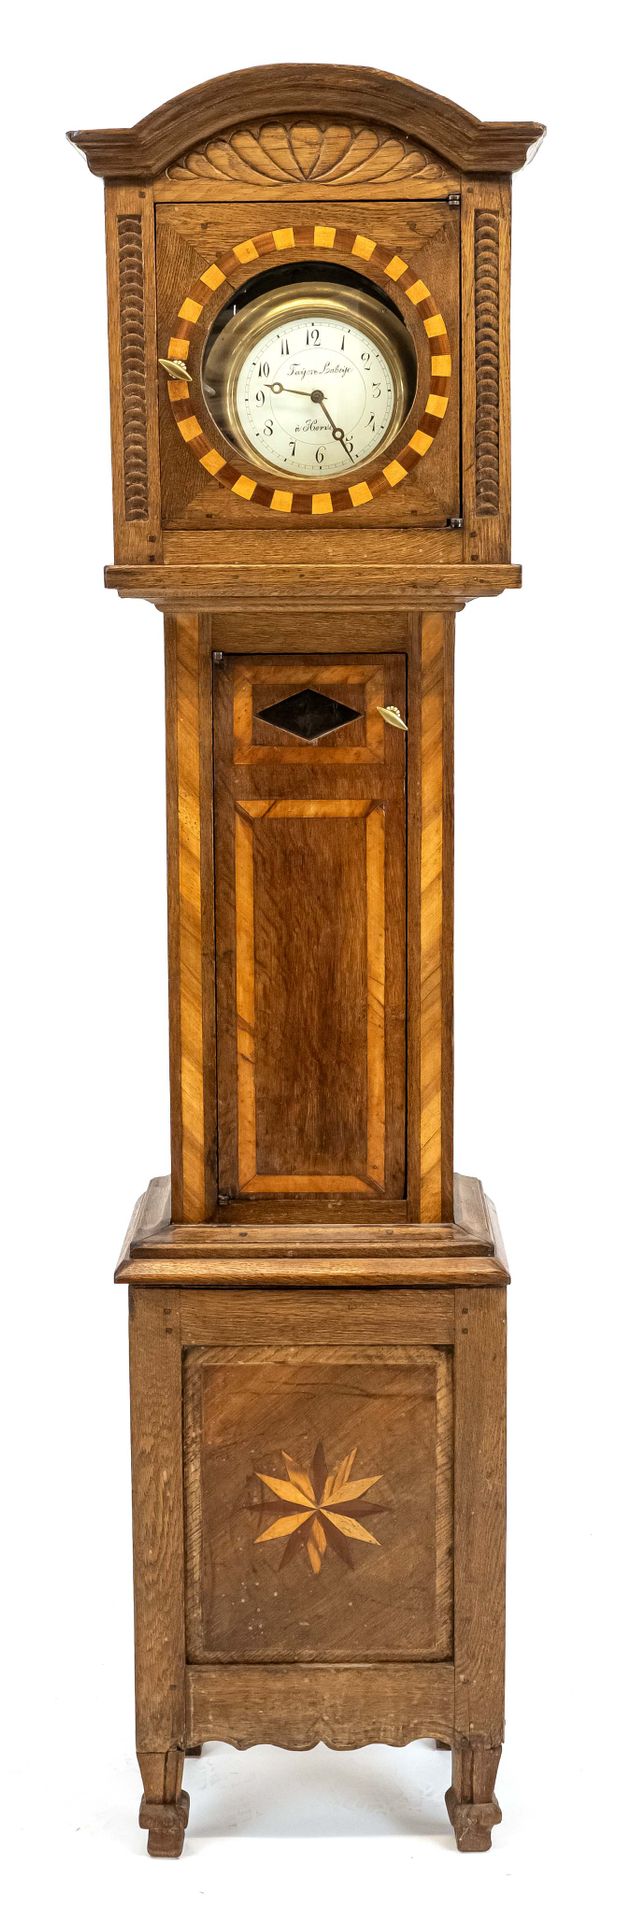 Null 橡木祖父钟 19世纪中期，彩色木材镶嵌，雕刻的头部，非匹配的机芯添加，时钟机芯与木质支架，高202厘米，宽45厘米，长22厘米